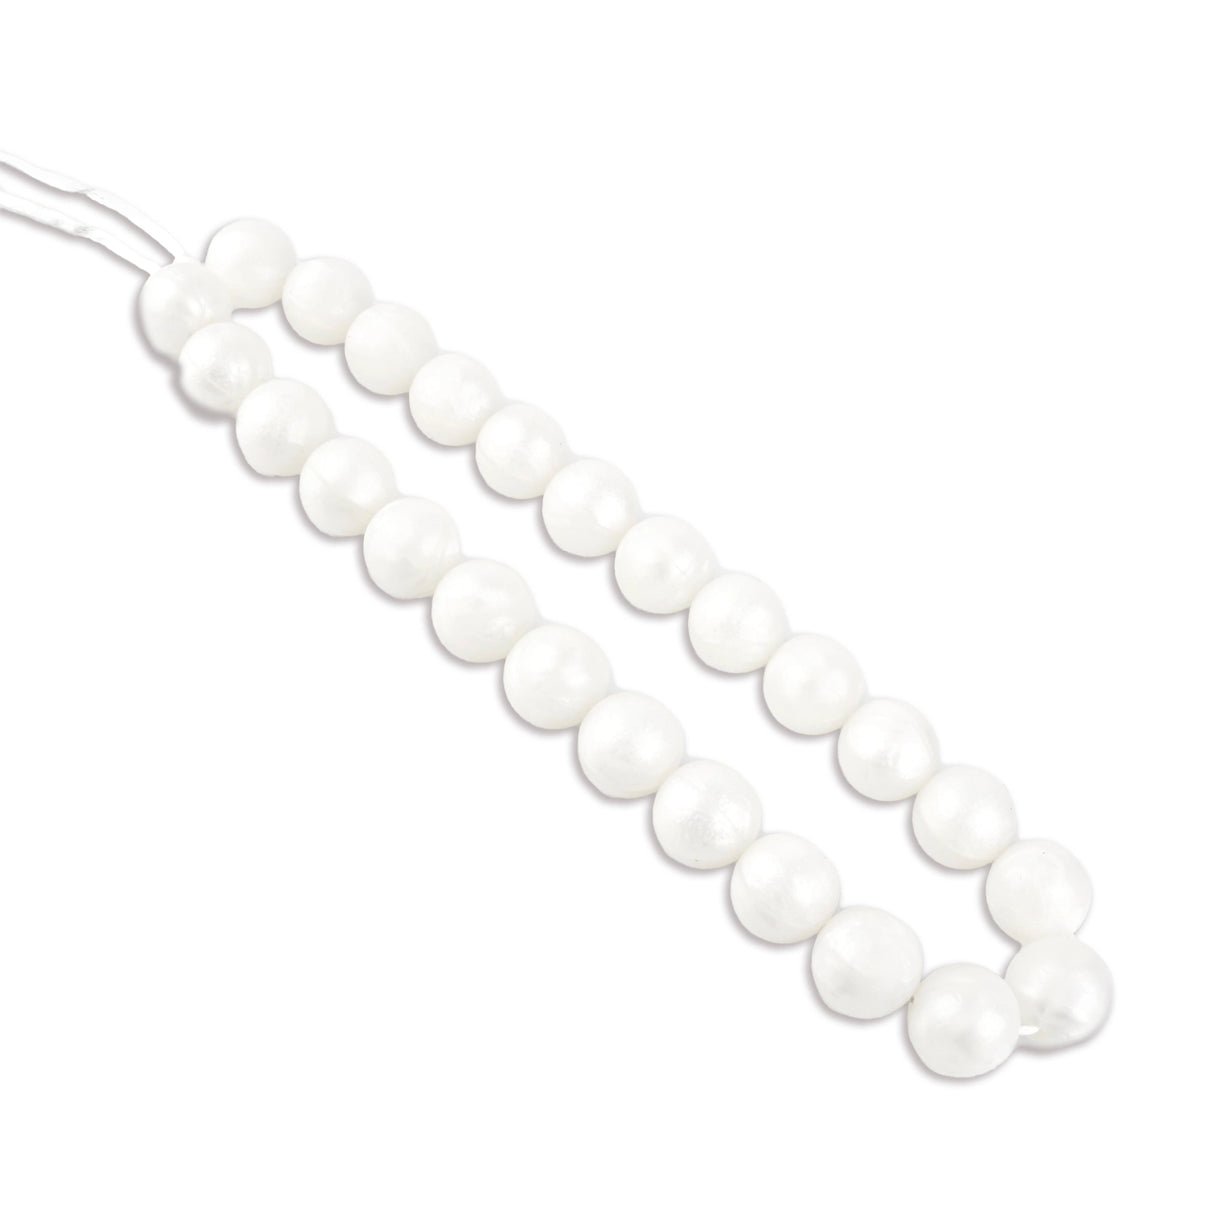 Silicone Bead Round - Metallic White